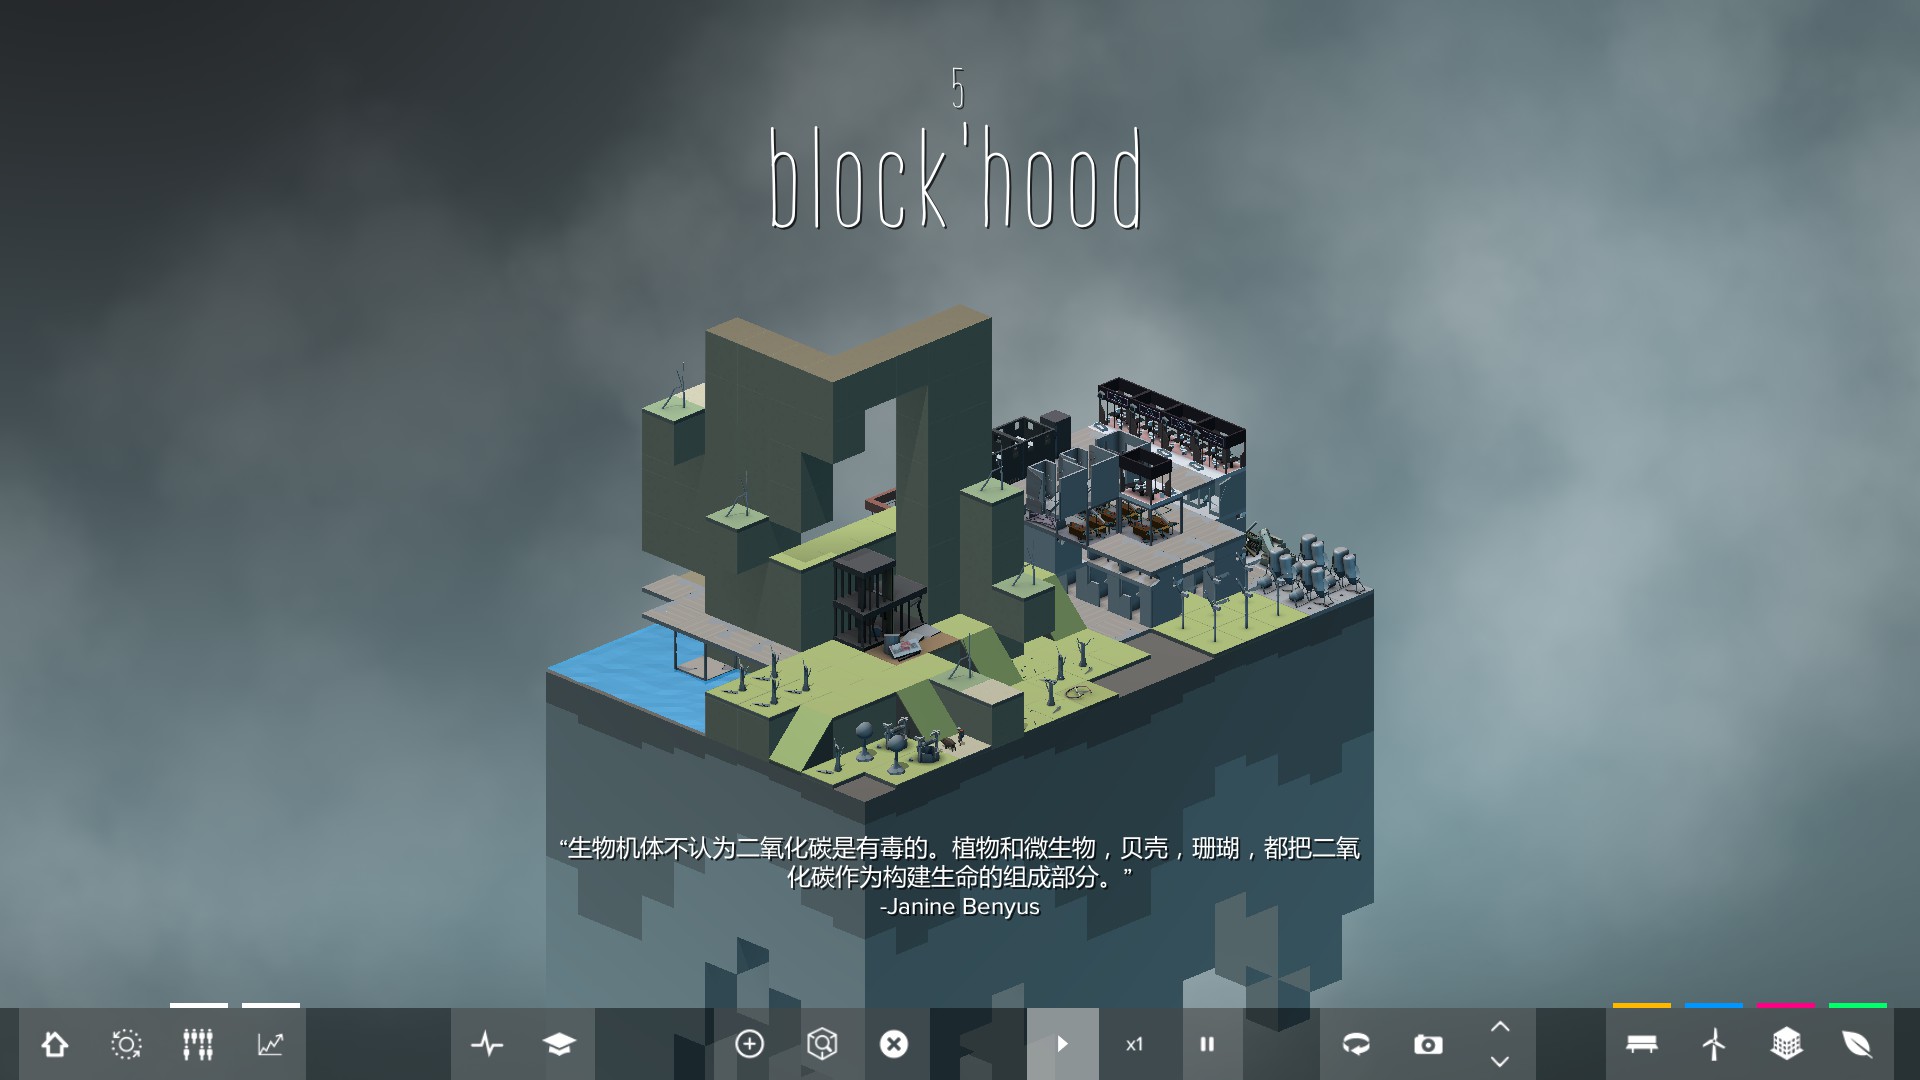 方块建造 Block'hood游戏评测20170729005